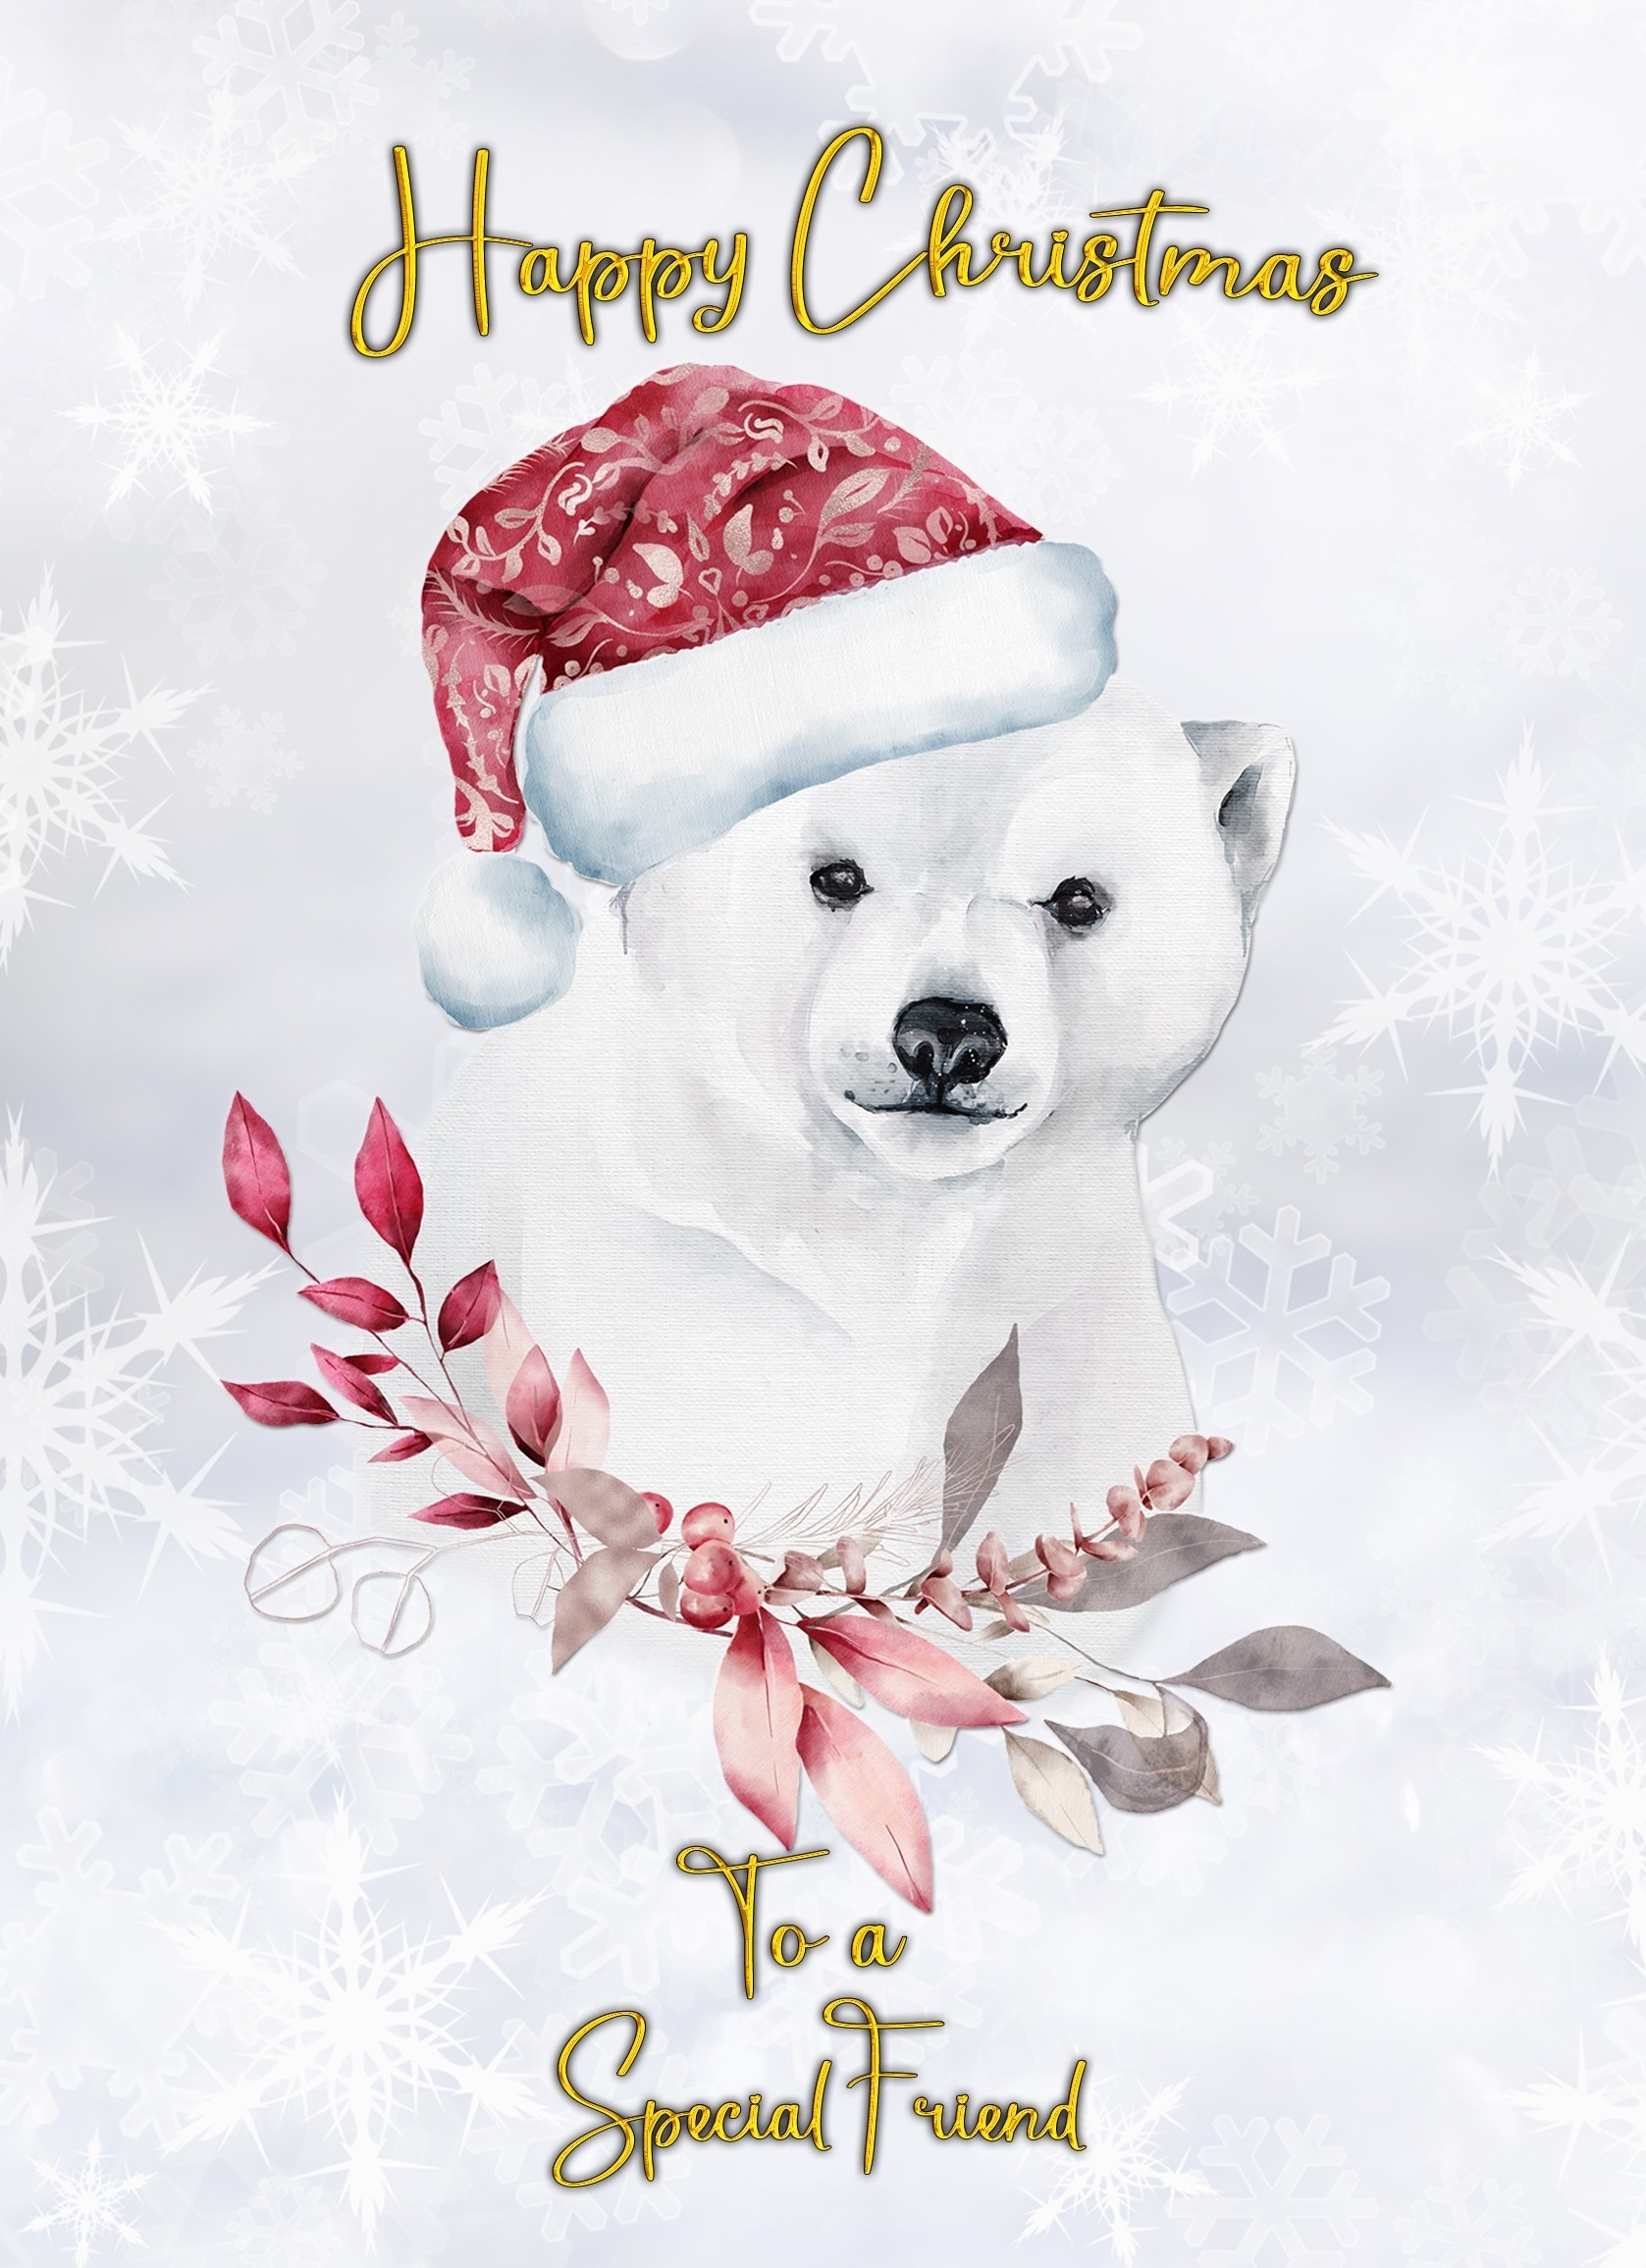 Christmas Card For Special Friend (Polar Bear)